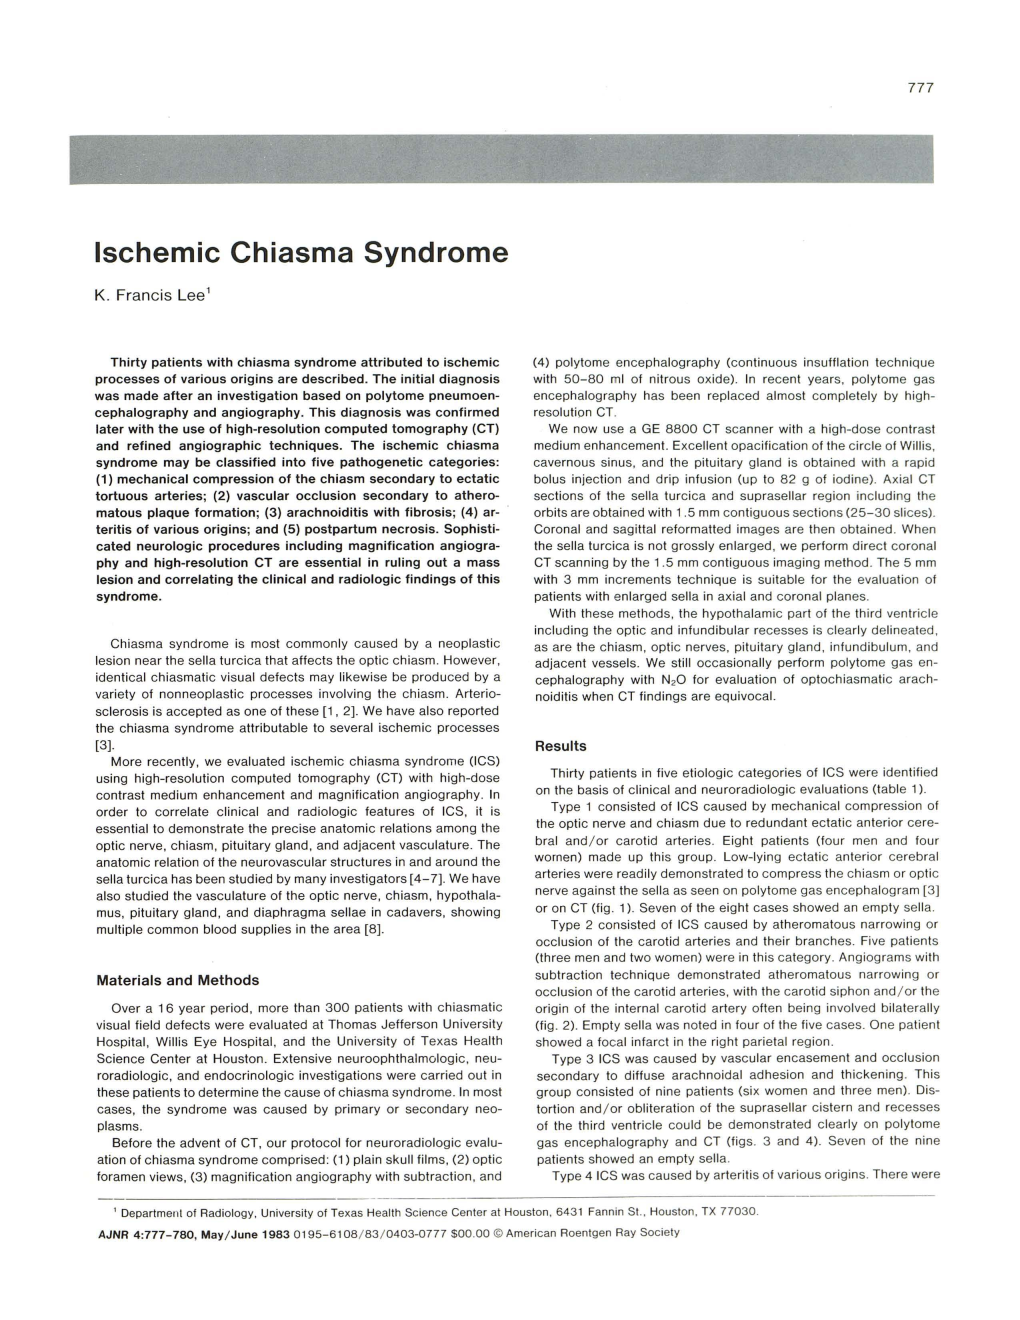 Ischemic Chiasma Syndrome